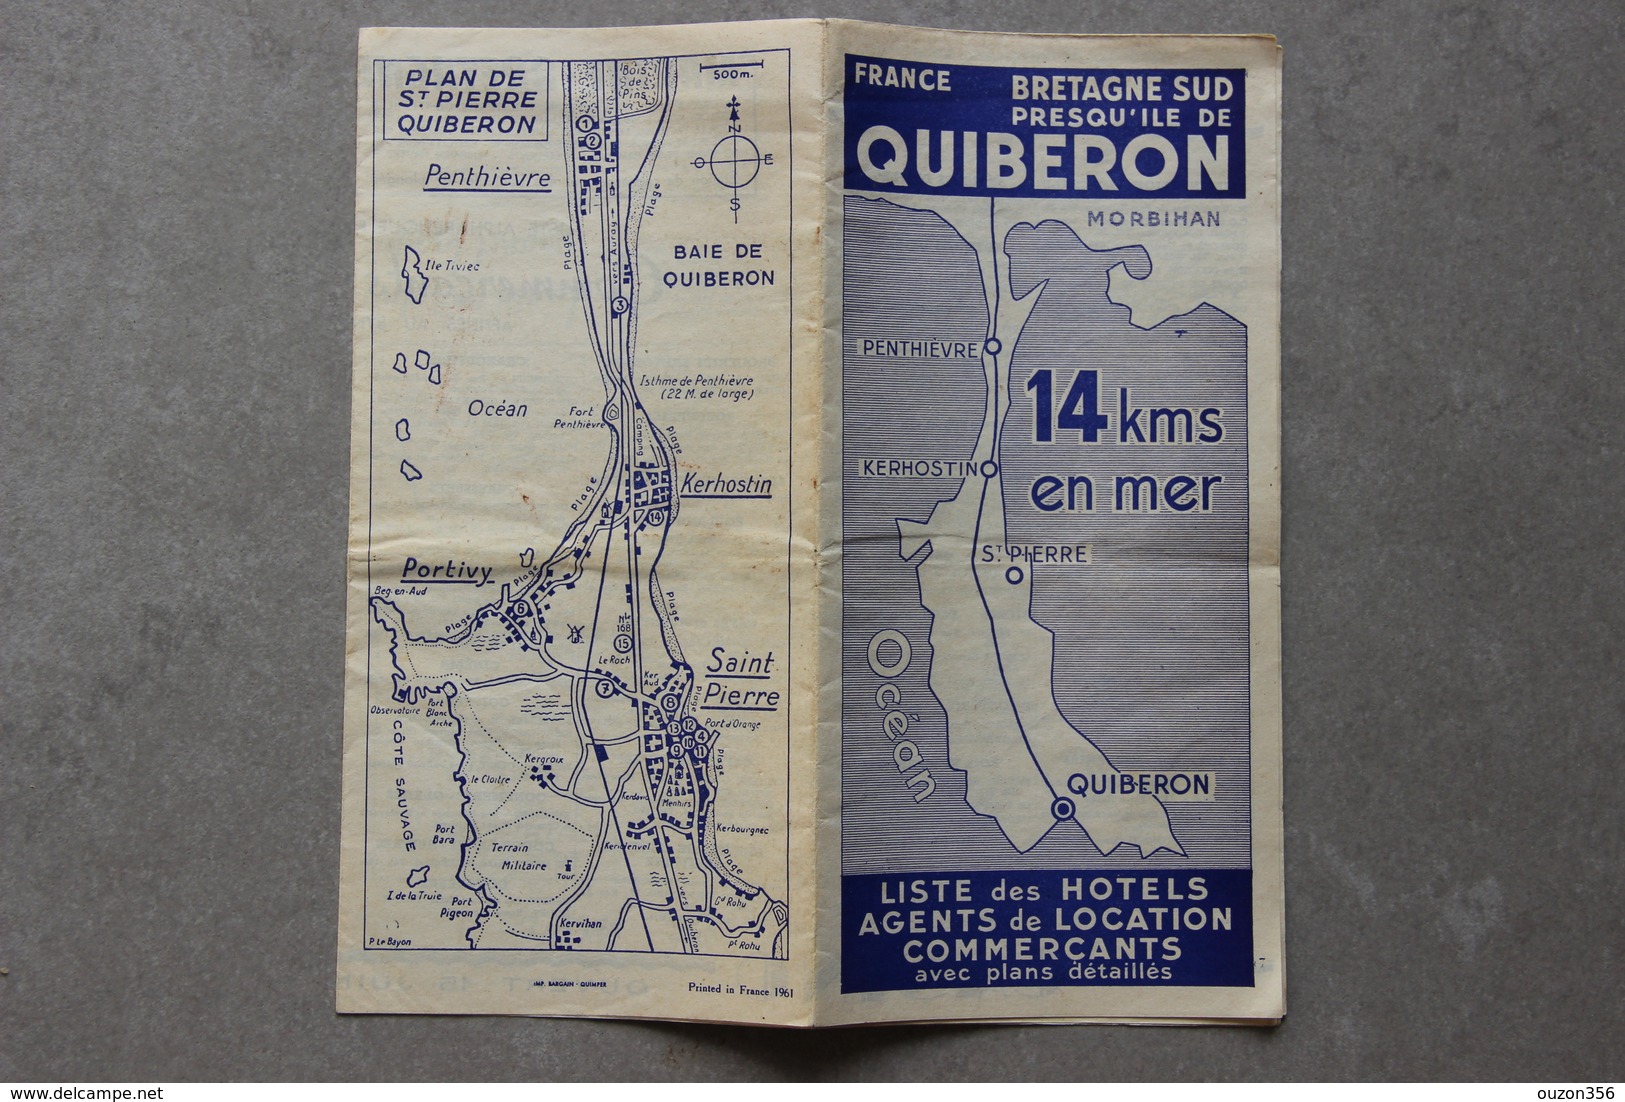 Presqu'île De Quiberon (Morbihan), Liste Des Hôtels, Agents De Location, Commerçants, 1961 - Dépliants Touristiques